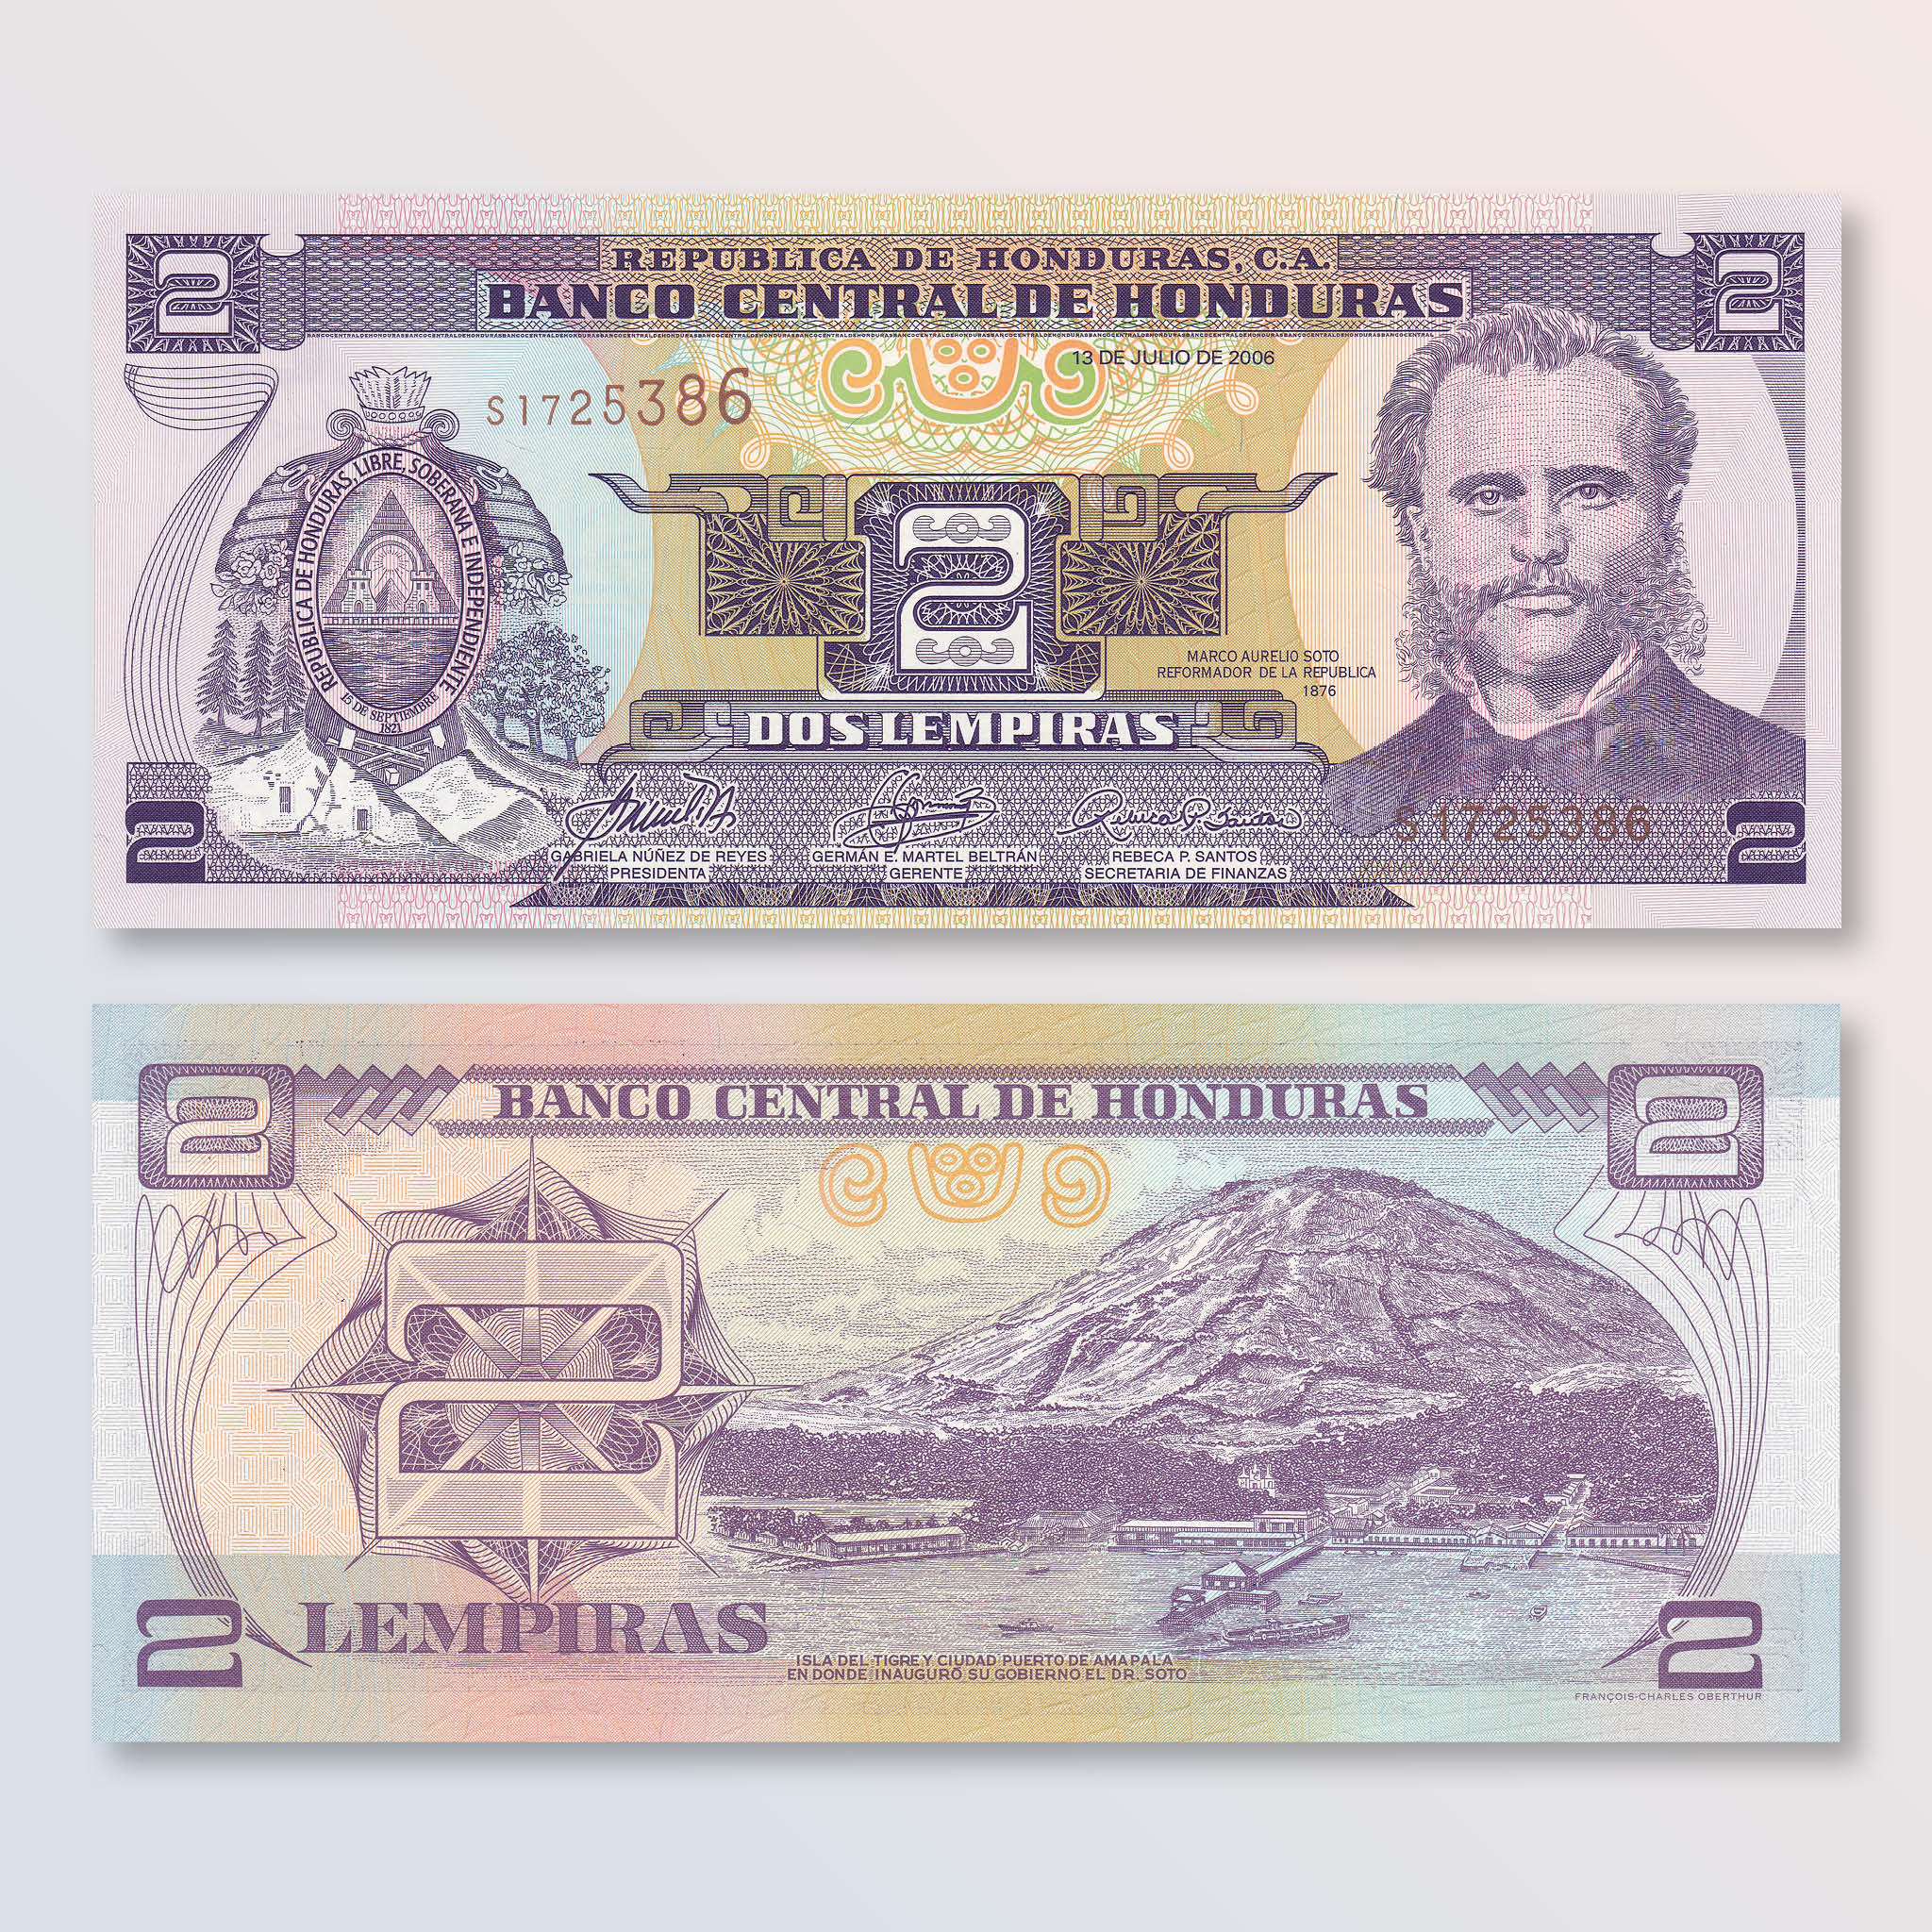 Honduras 2 Lempiras, 2006, B326j, P80Af, UNC - Robert's World Money - World Banknotes